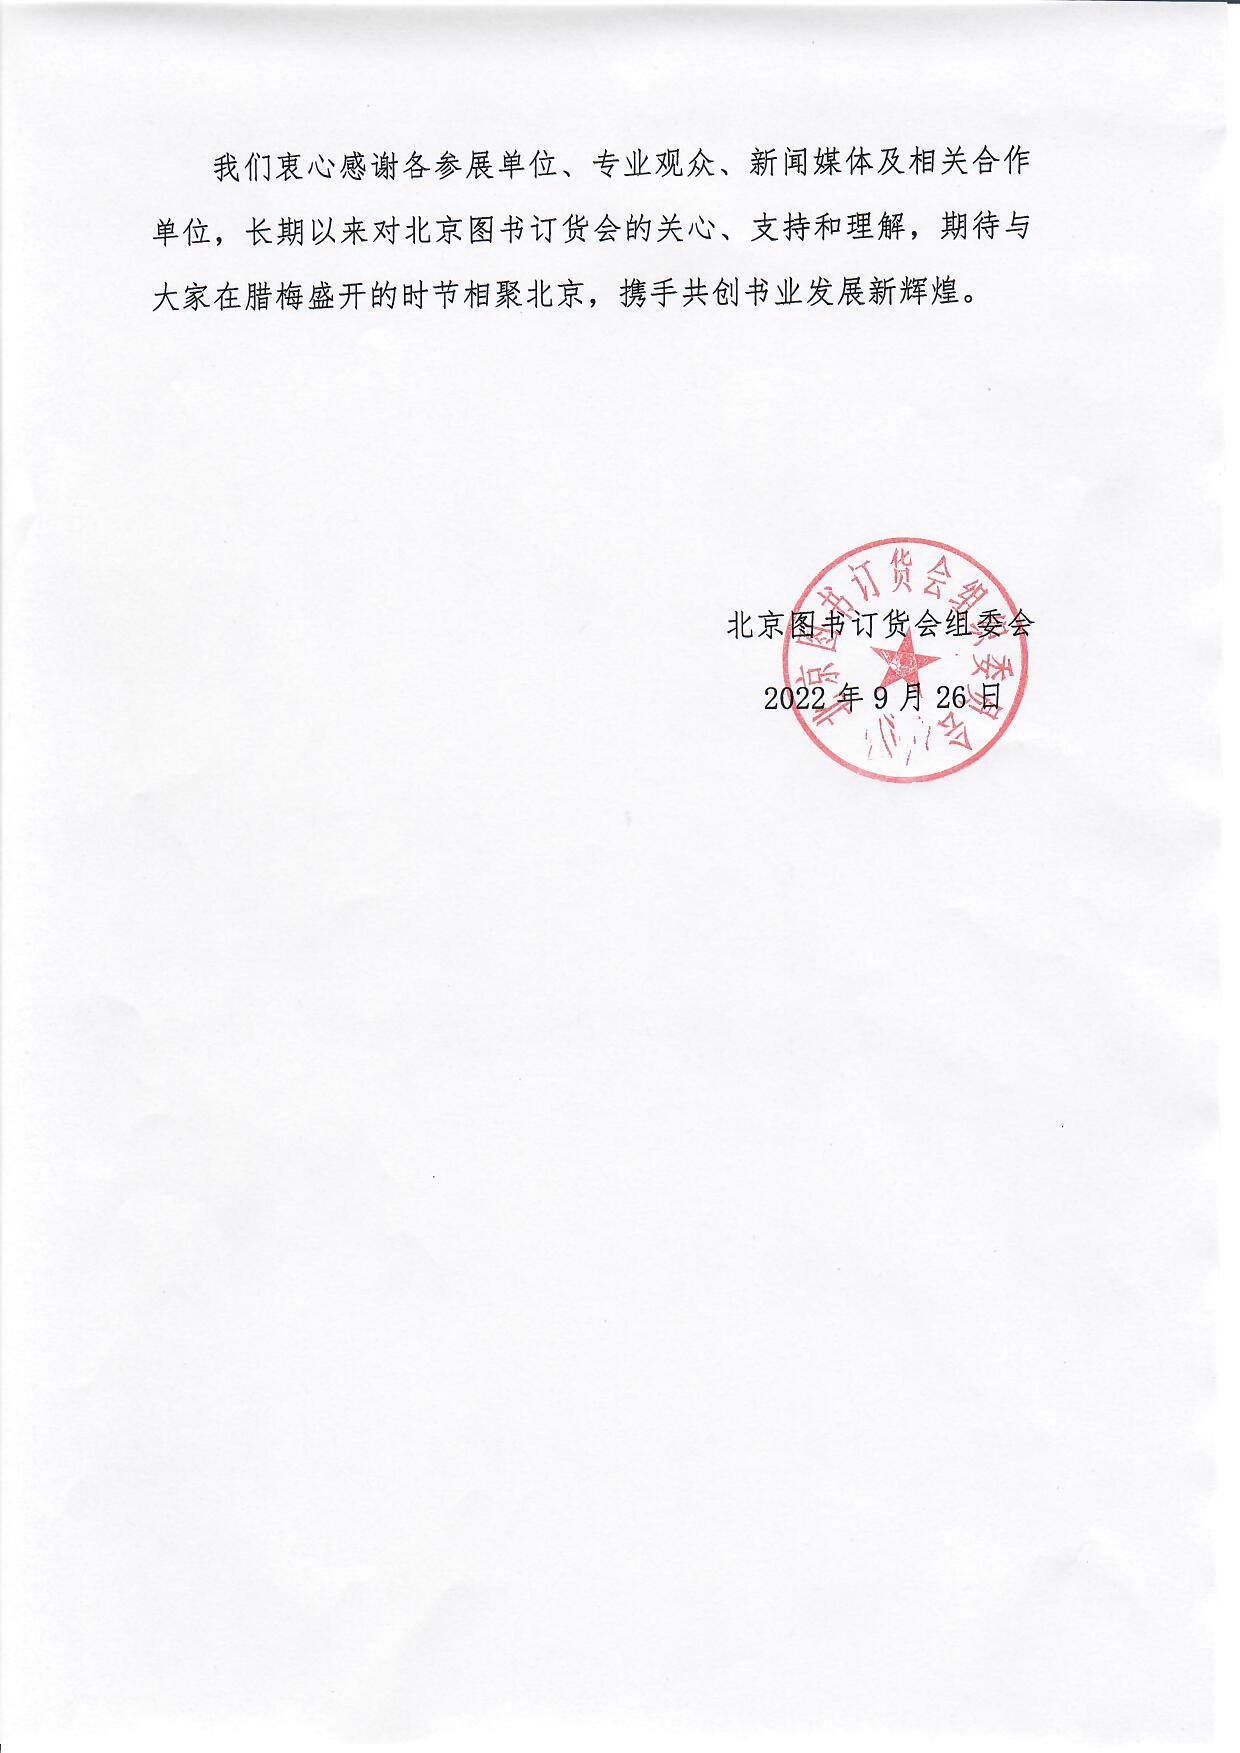 关于2022-2023北京图书订货会合并举办的通知_页面_2.jpg